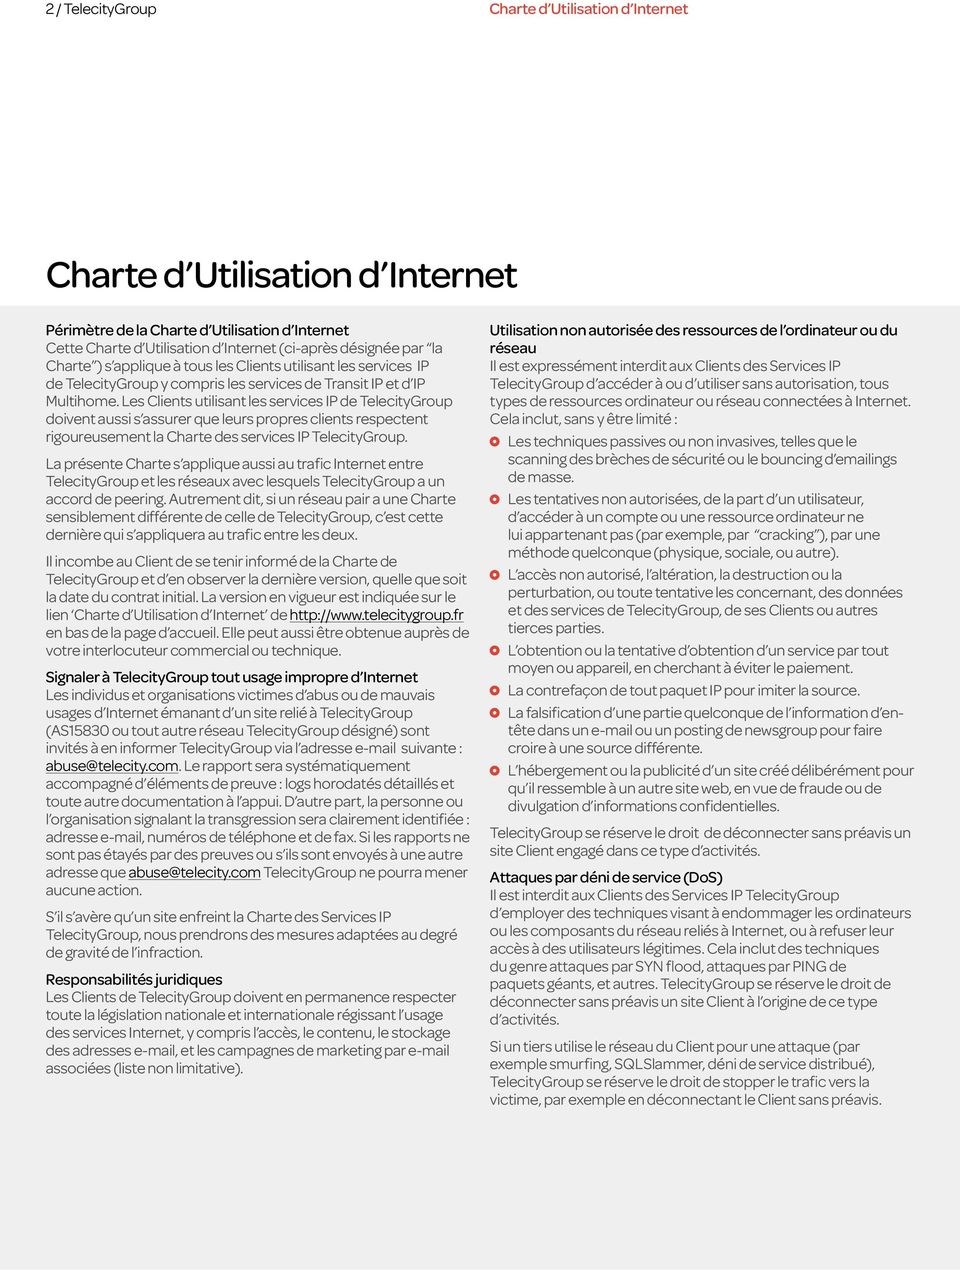 La présente Charte s applique aussi au trafic Internet entre TelecityGroup et les réseaux avec lesquels TelecityGroup a un accord de peering.